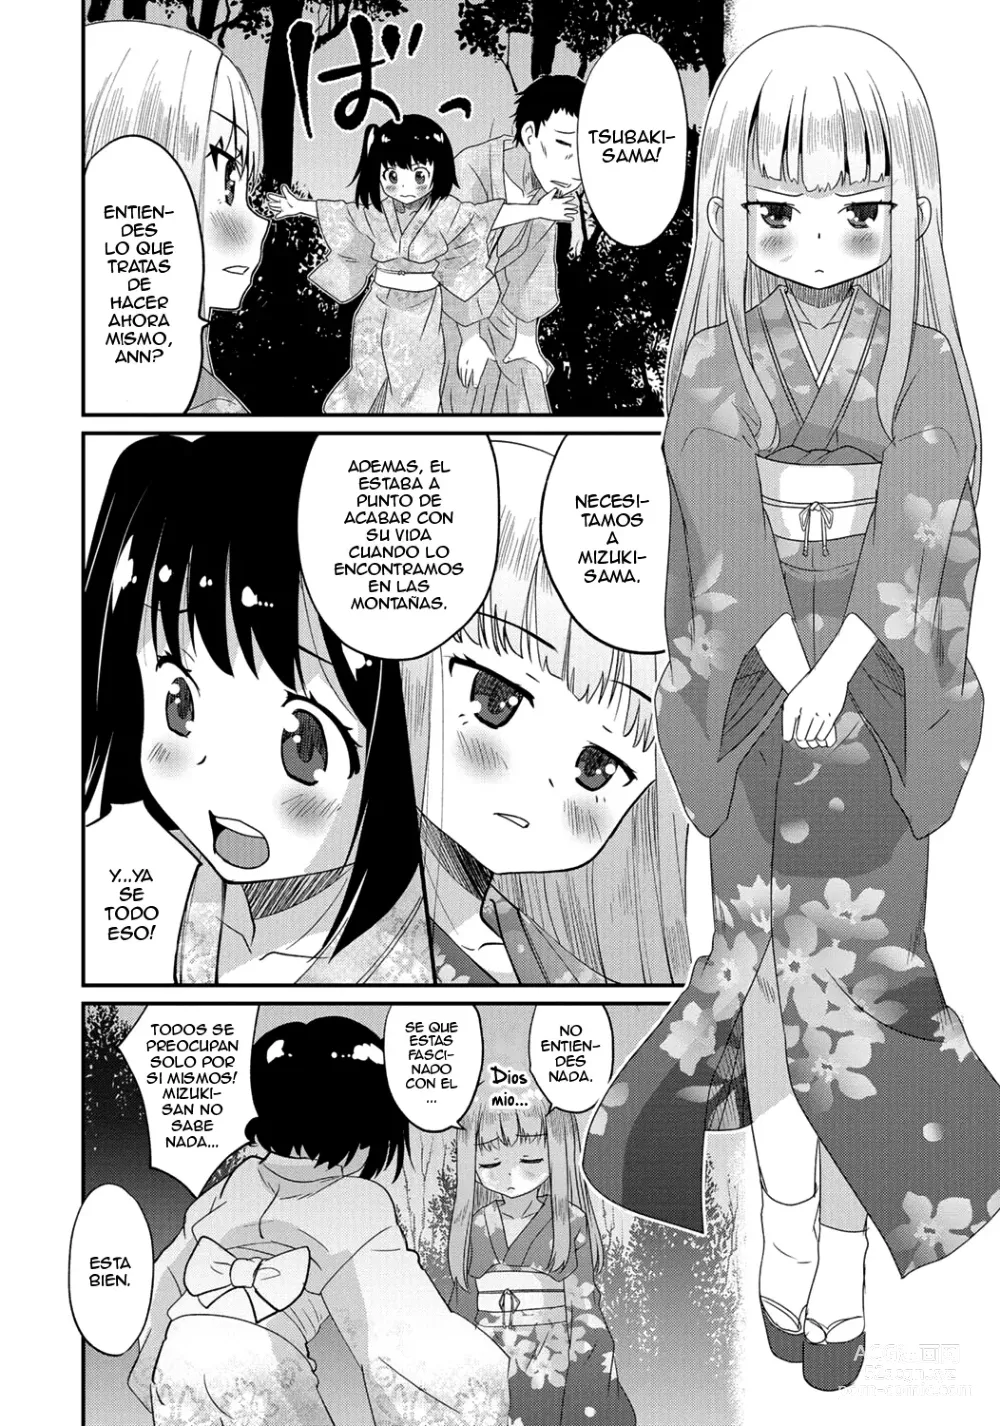 Page 7 of manga Gekkan Web Otoko no Ko-llection! S Vol. 06